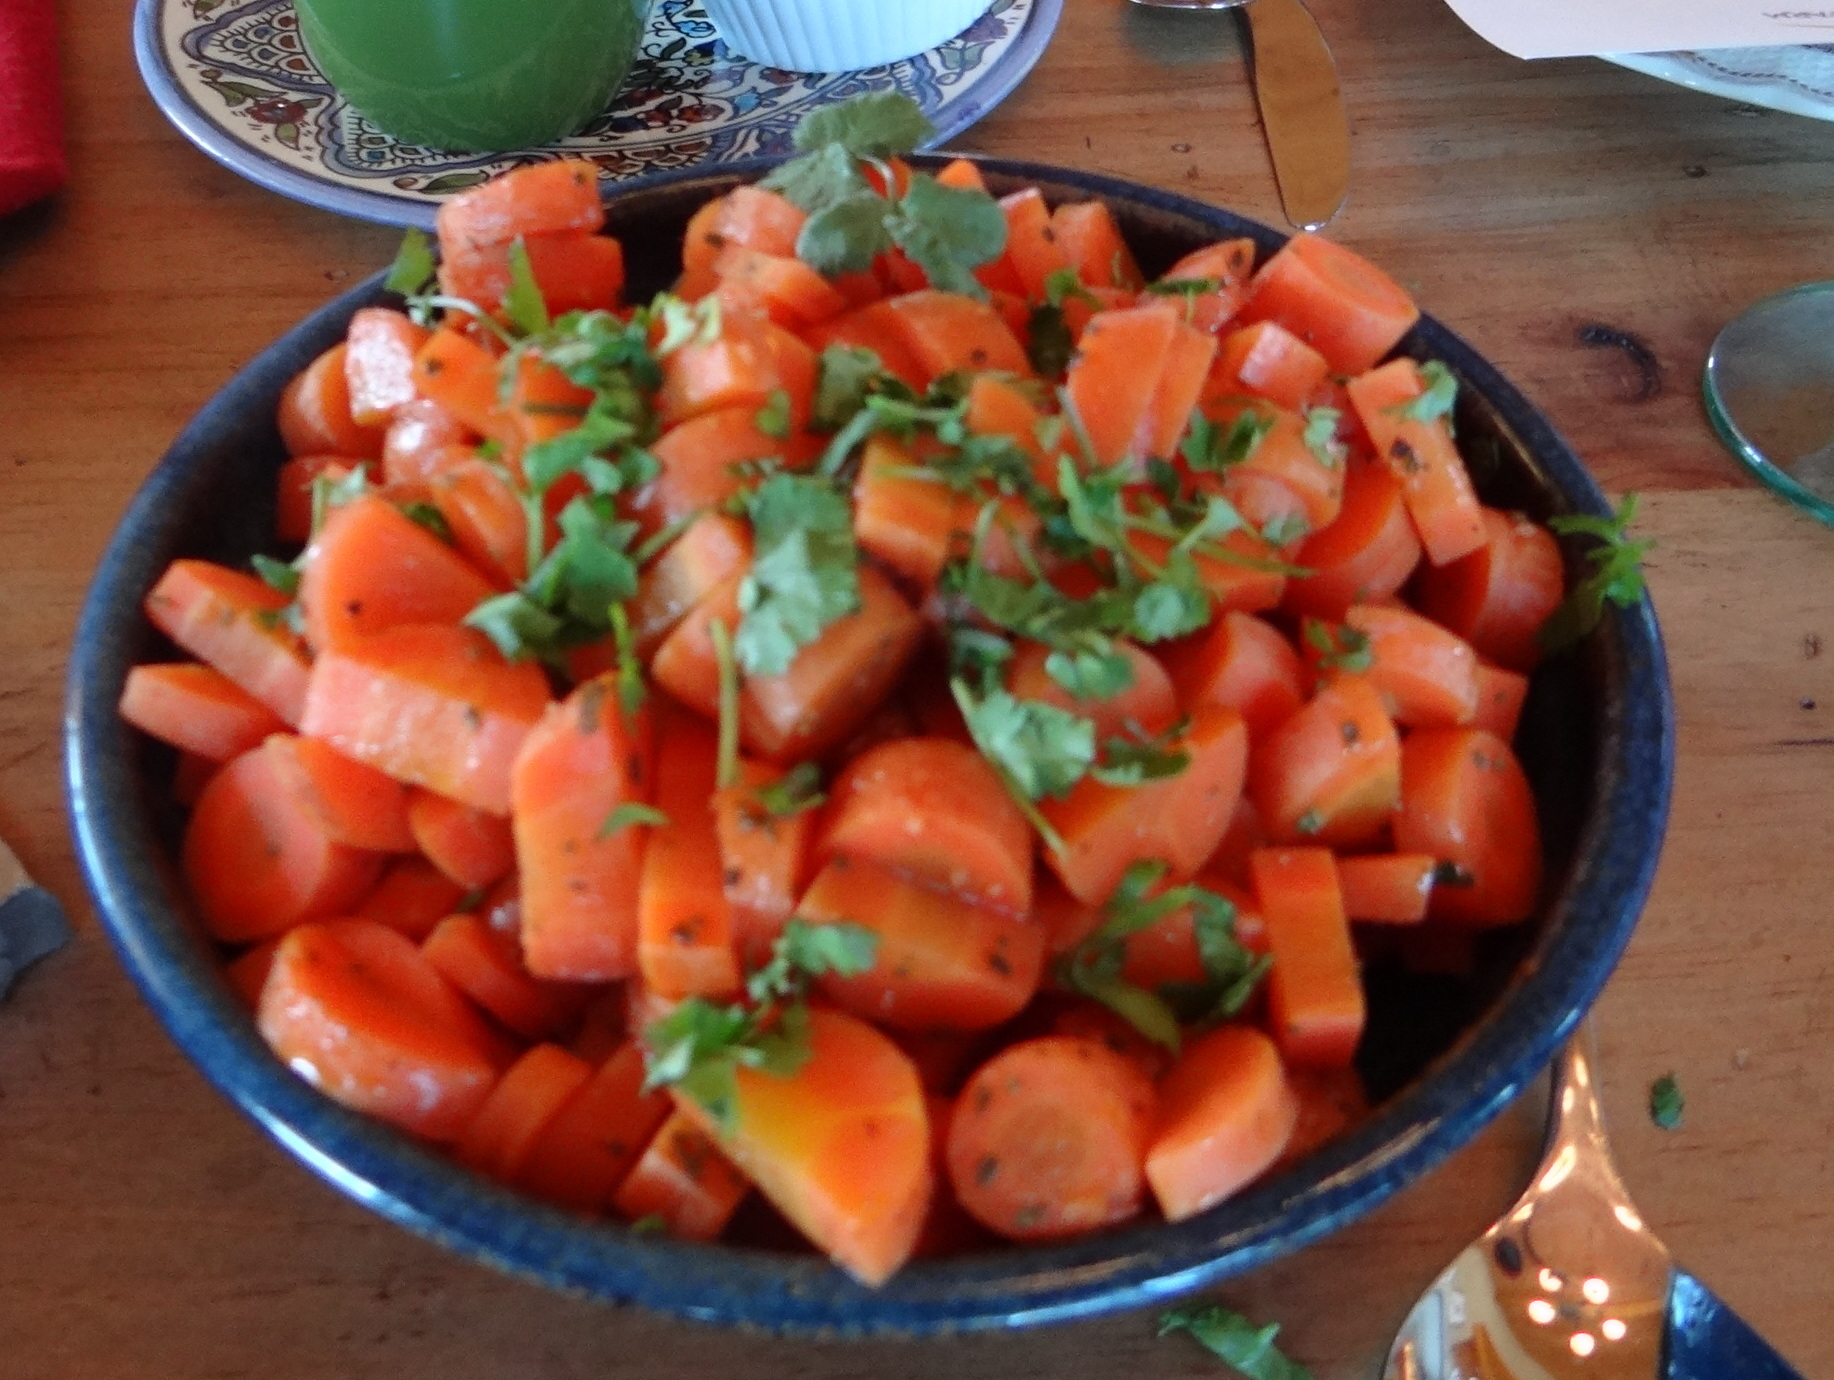 marinated carrots